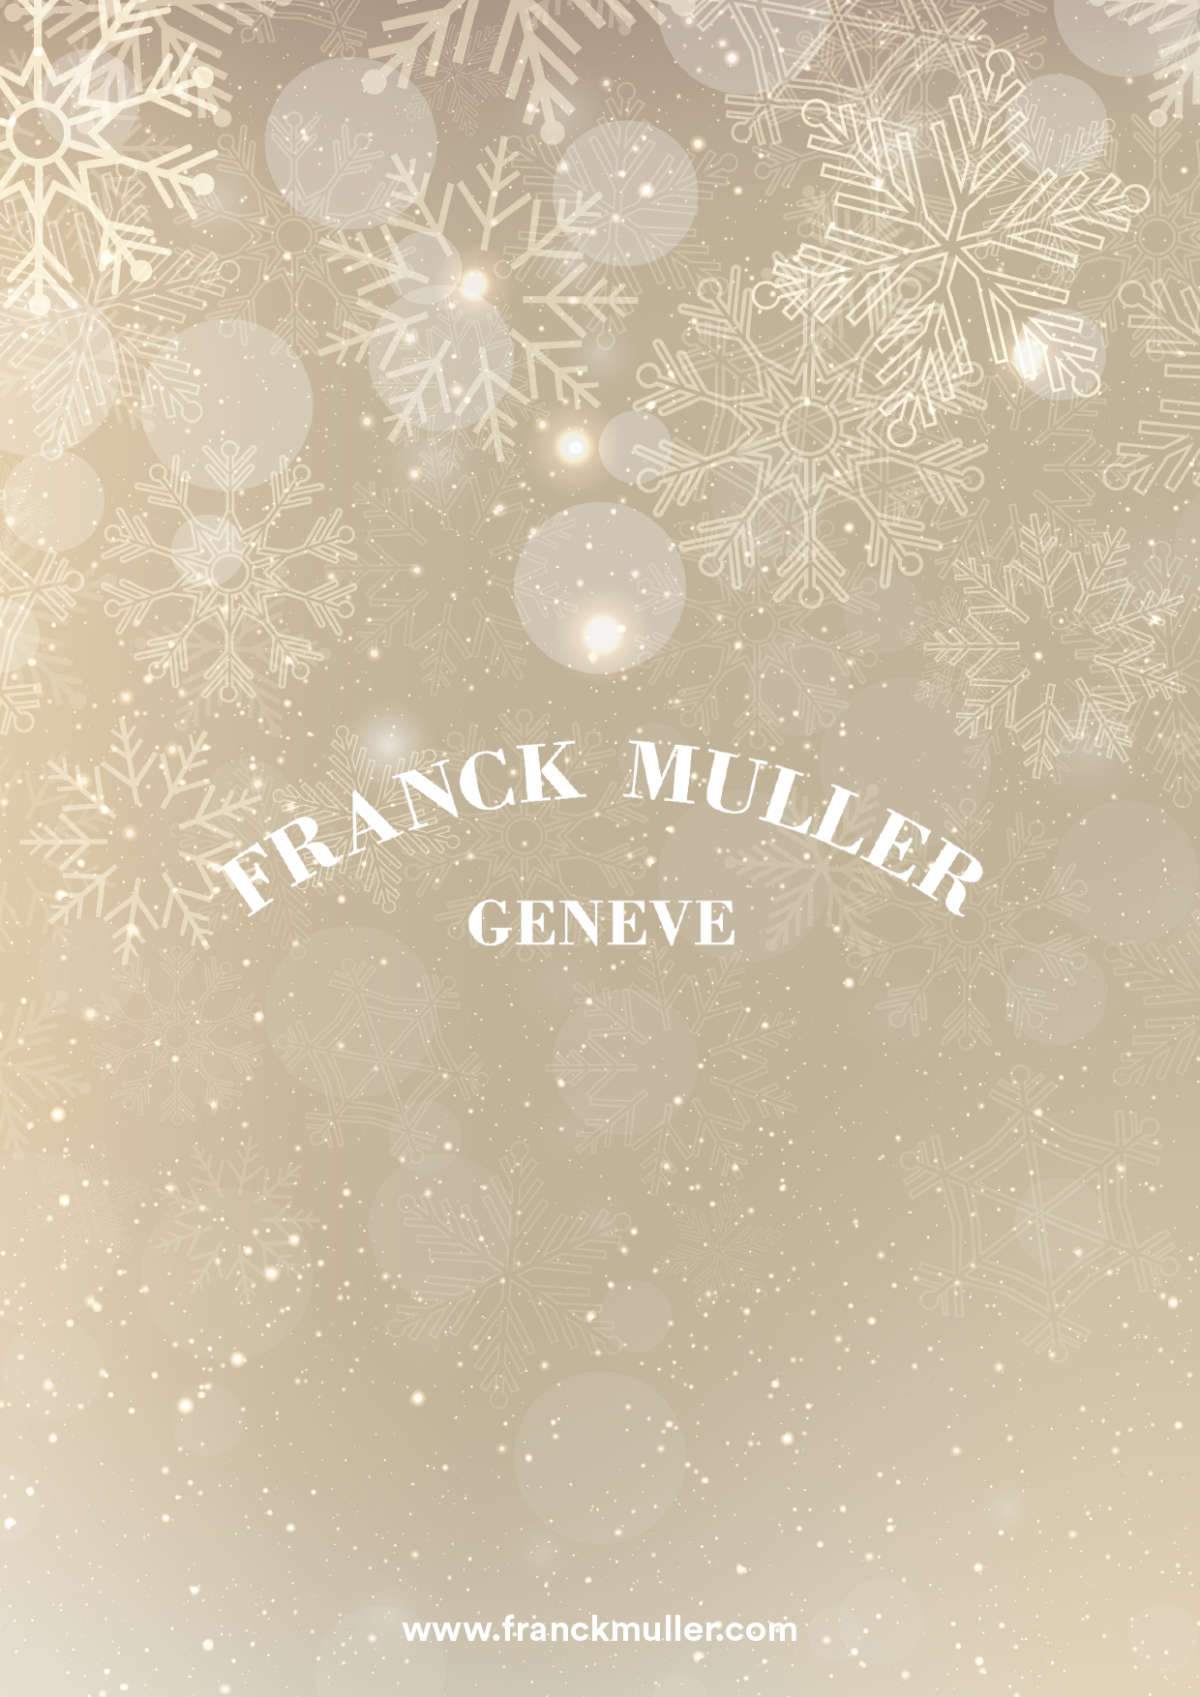 Franck Muller: Season's Greetings